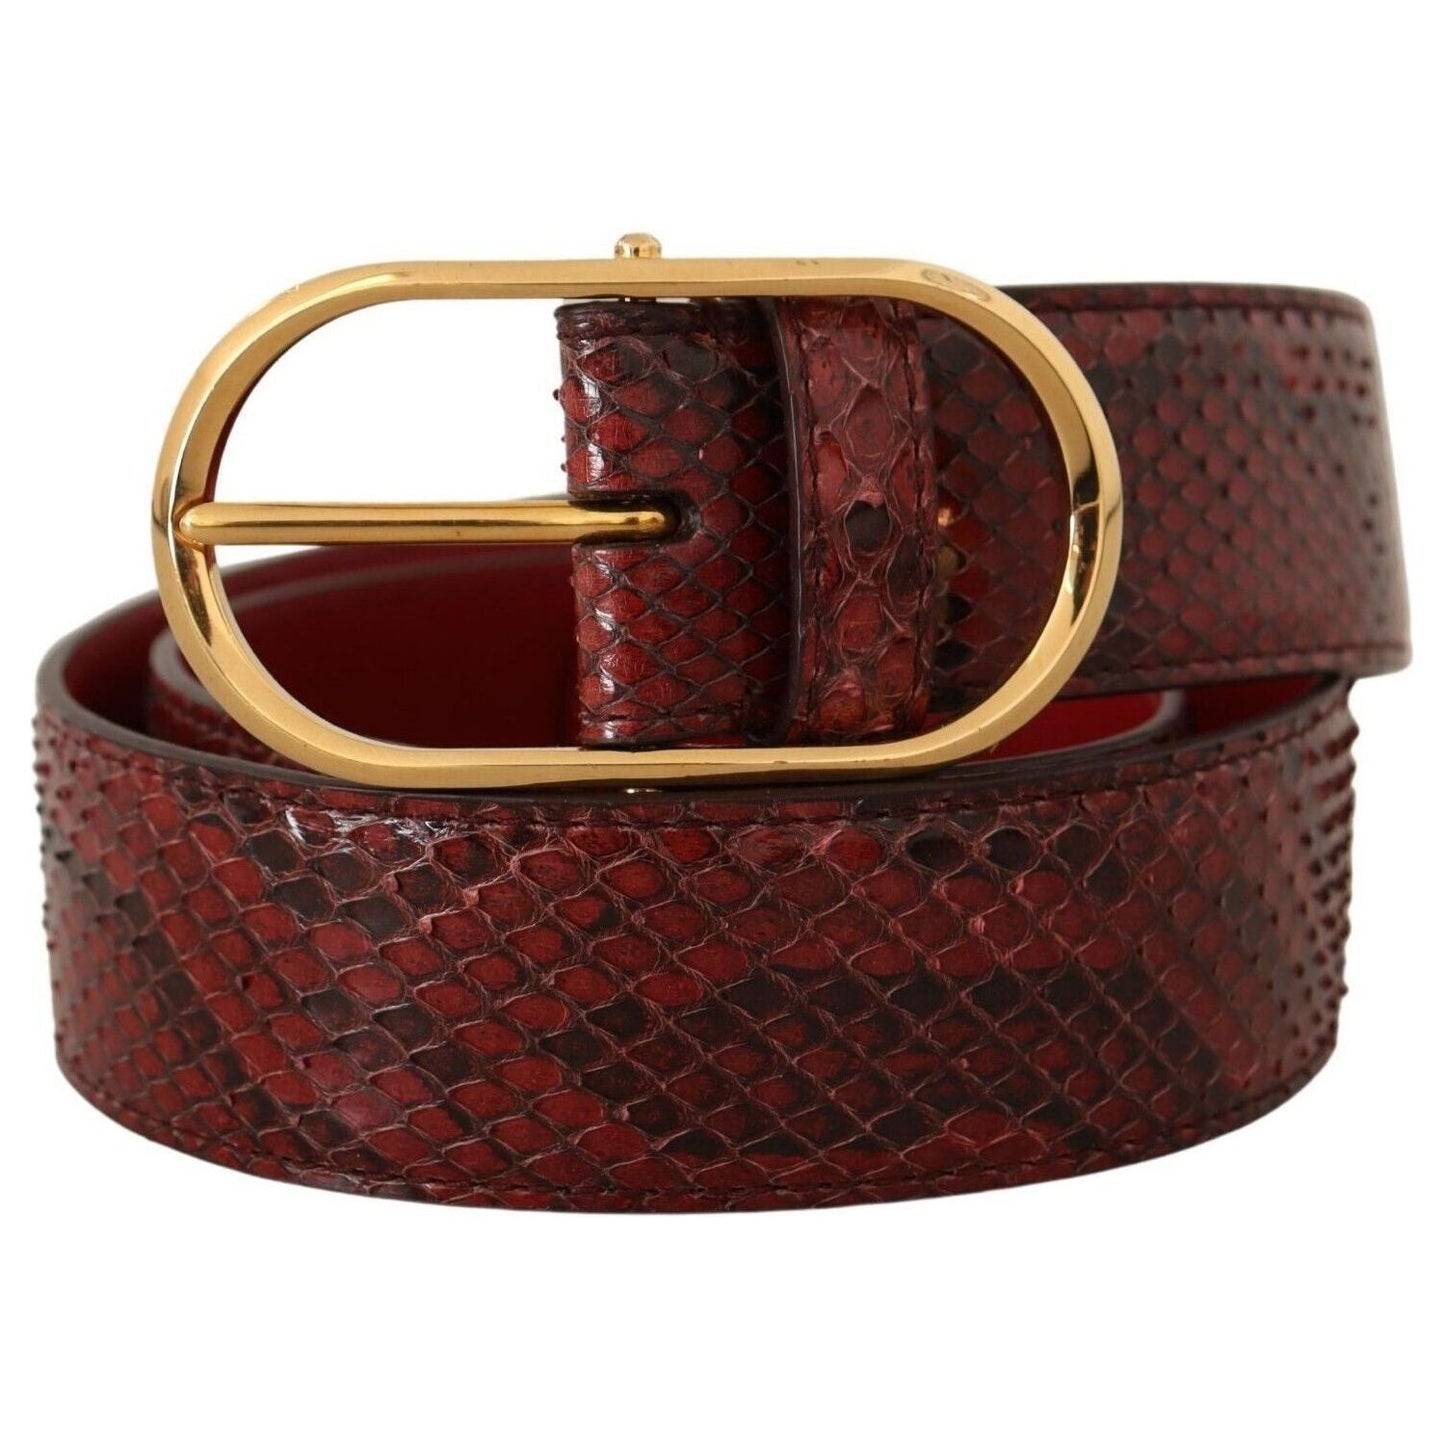 Dolce & Gabbana Elegant Red Snakeskin Leather Belt red-exotic-leather-gold-oval-buckle-belt-1 s-l1600-1-285-57f643c6-568.jpg